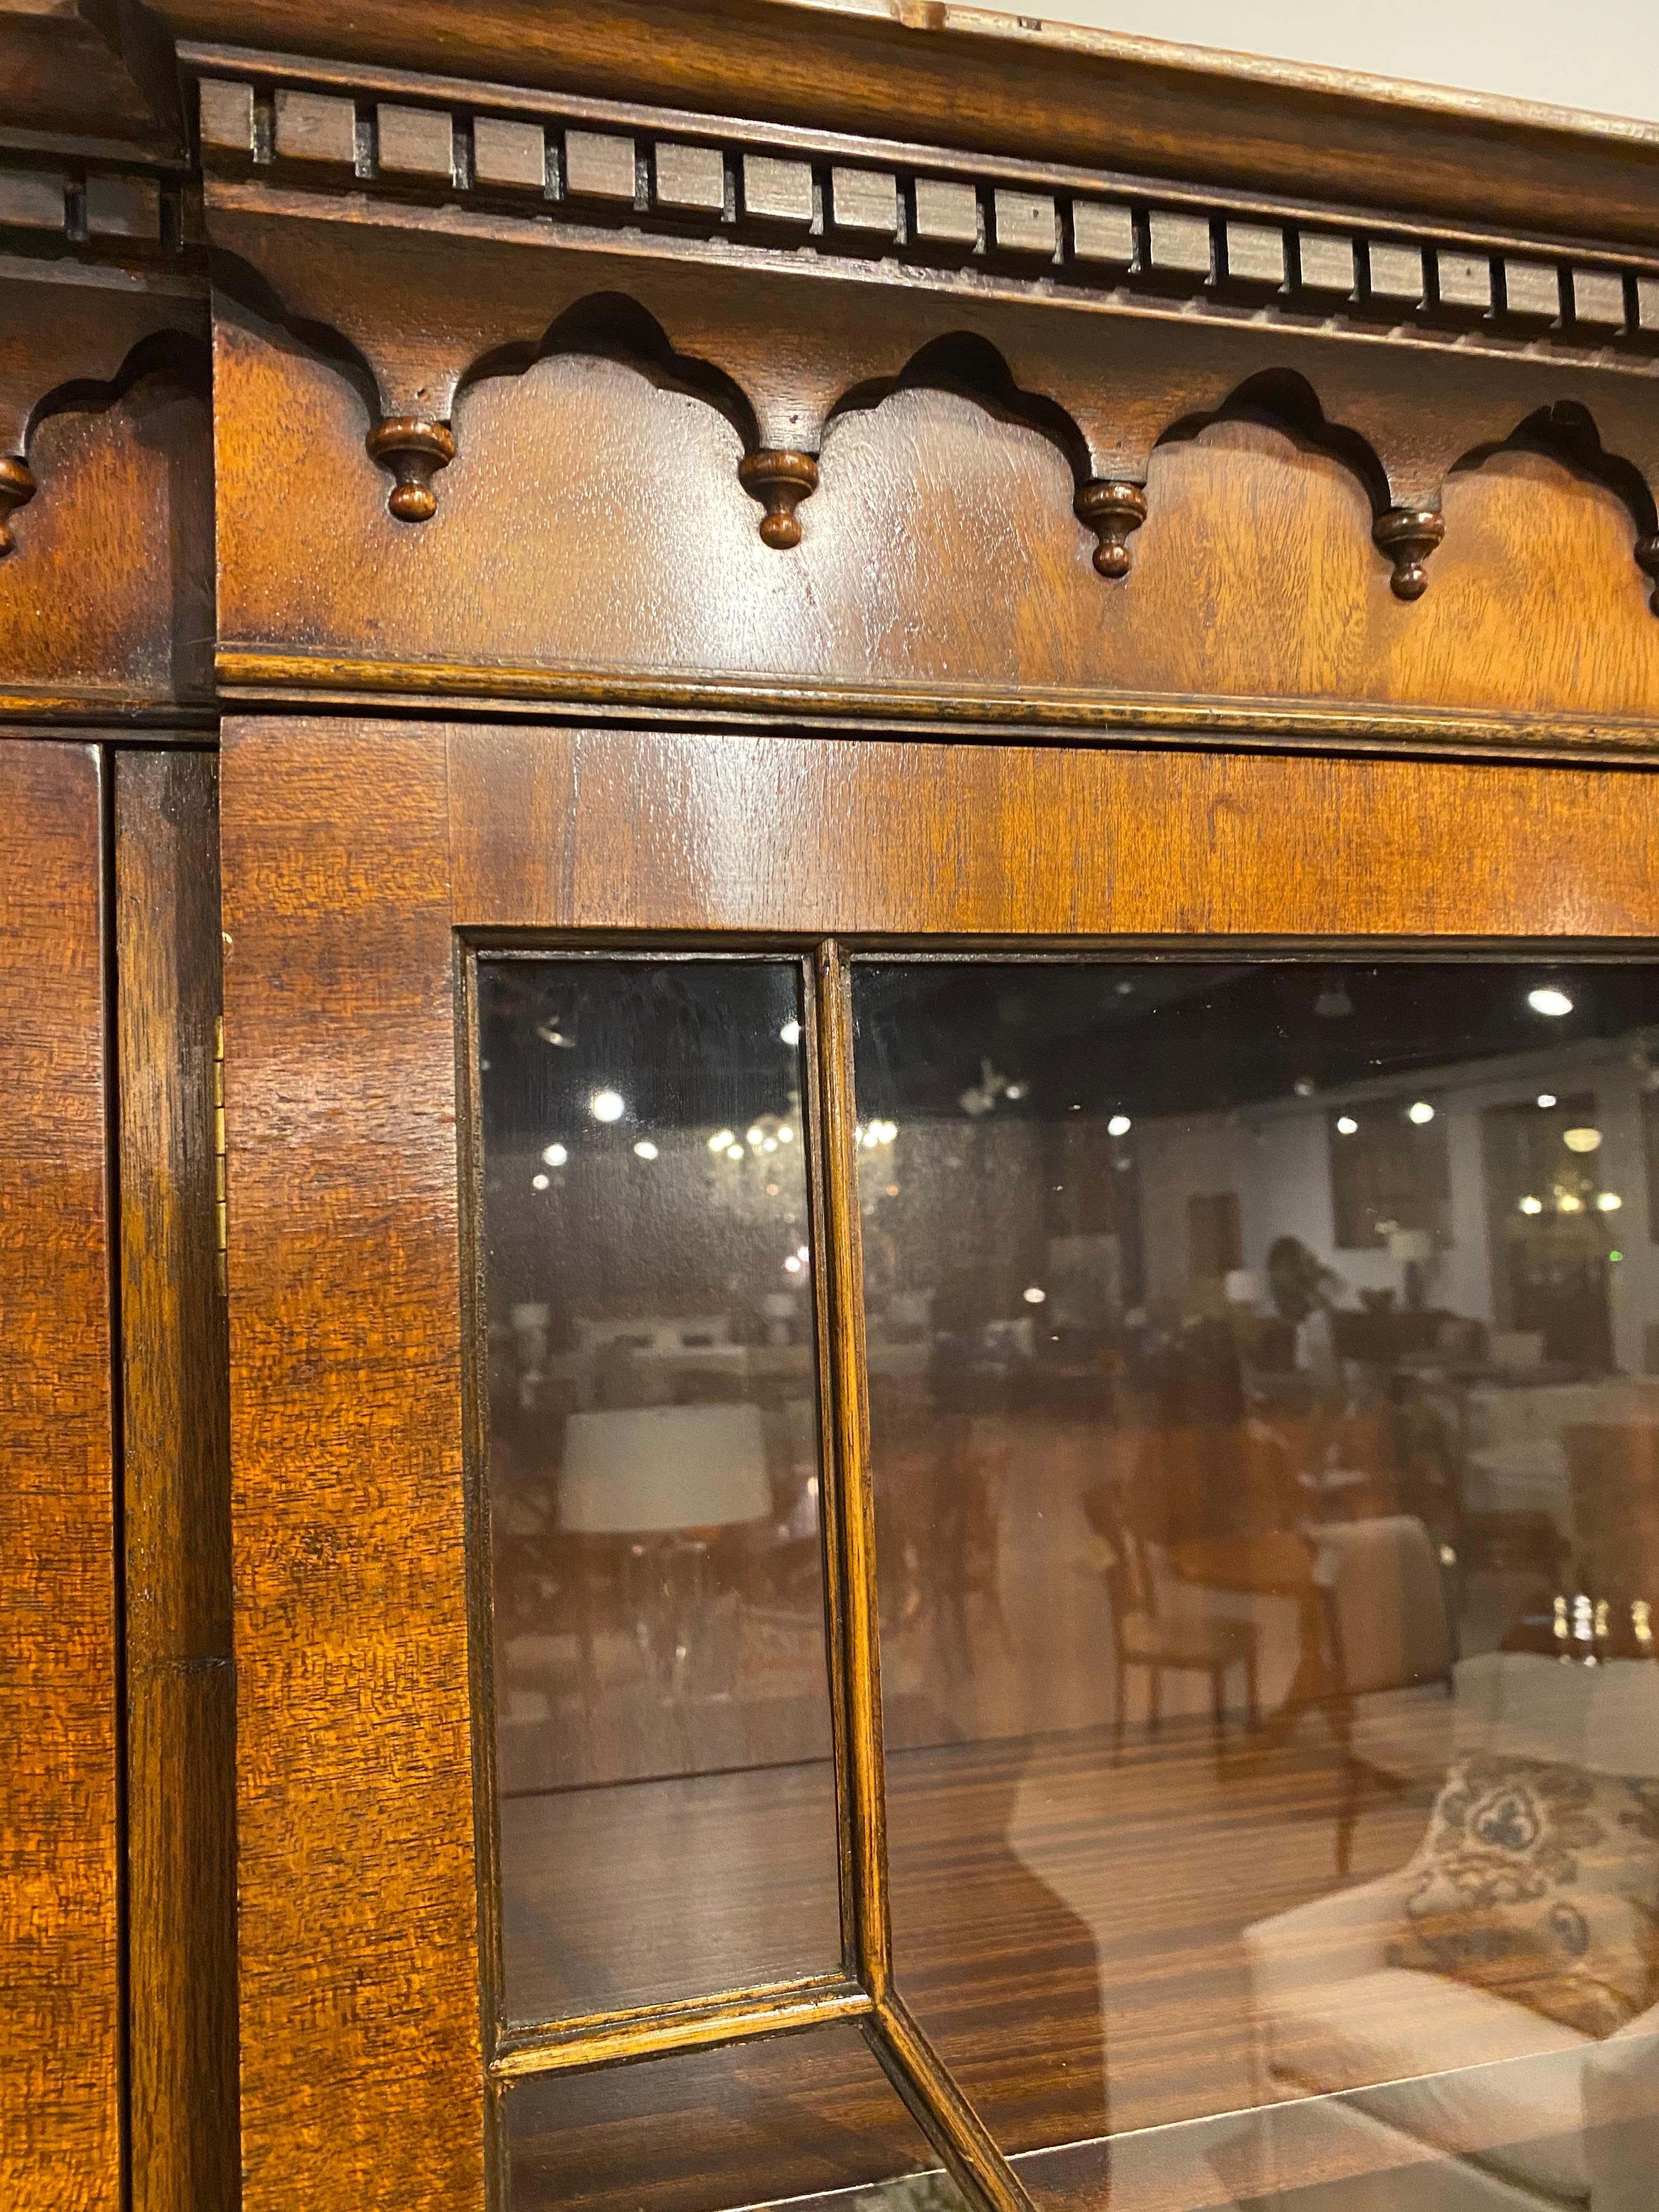 mahogany bookcase with doors